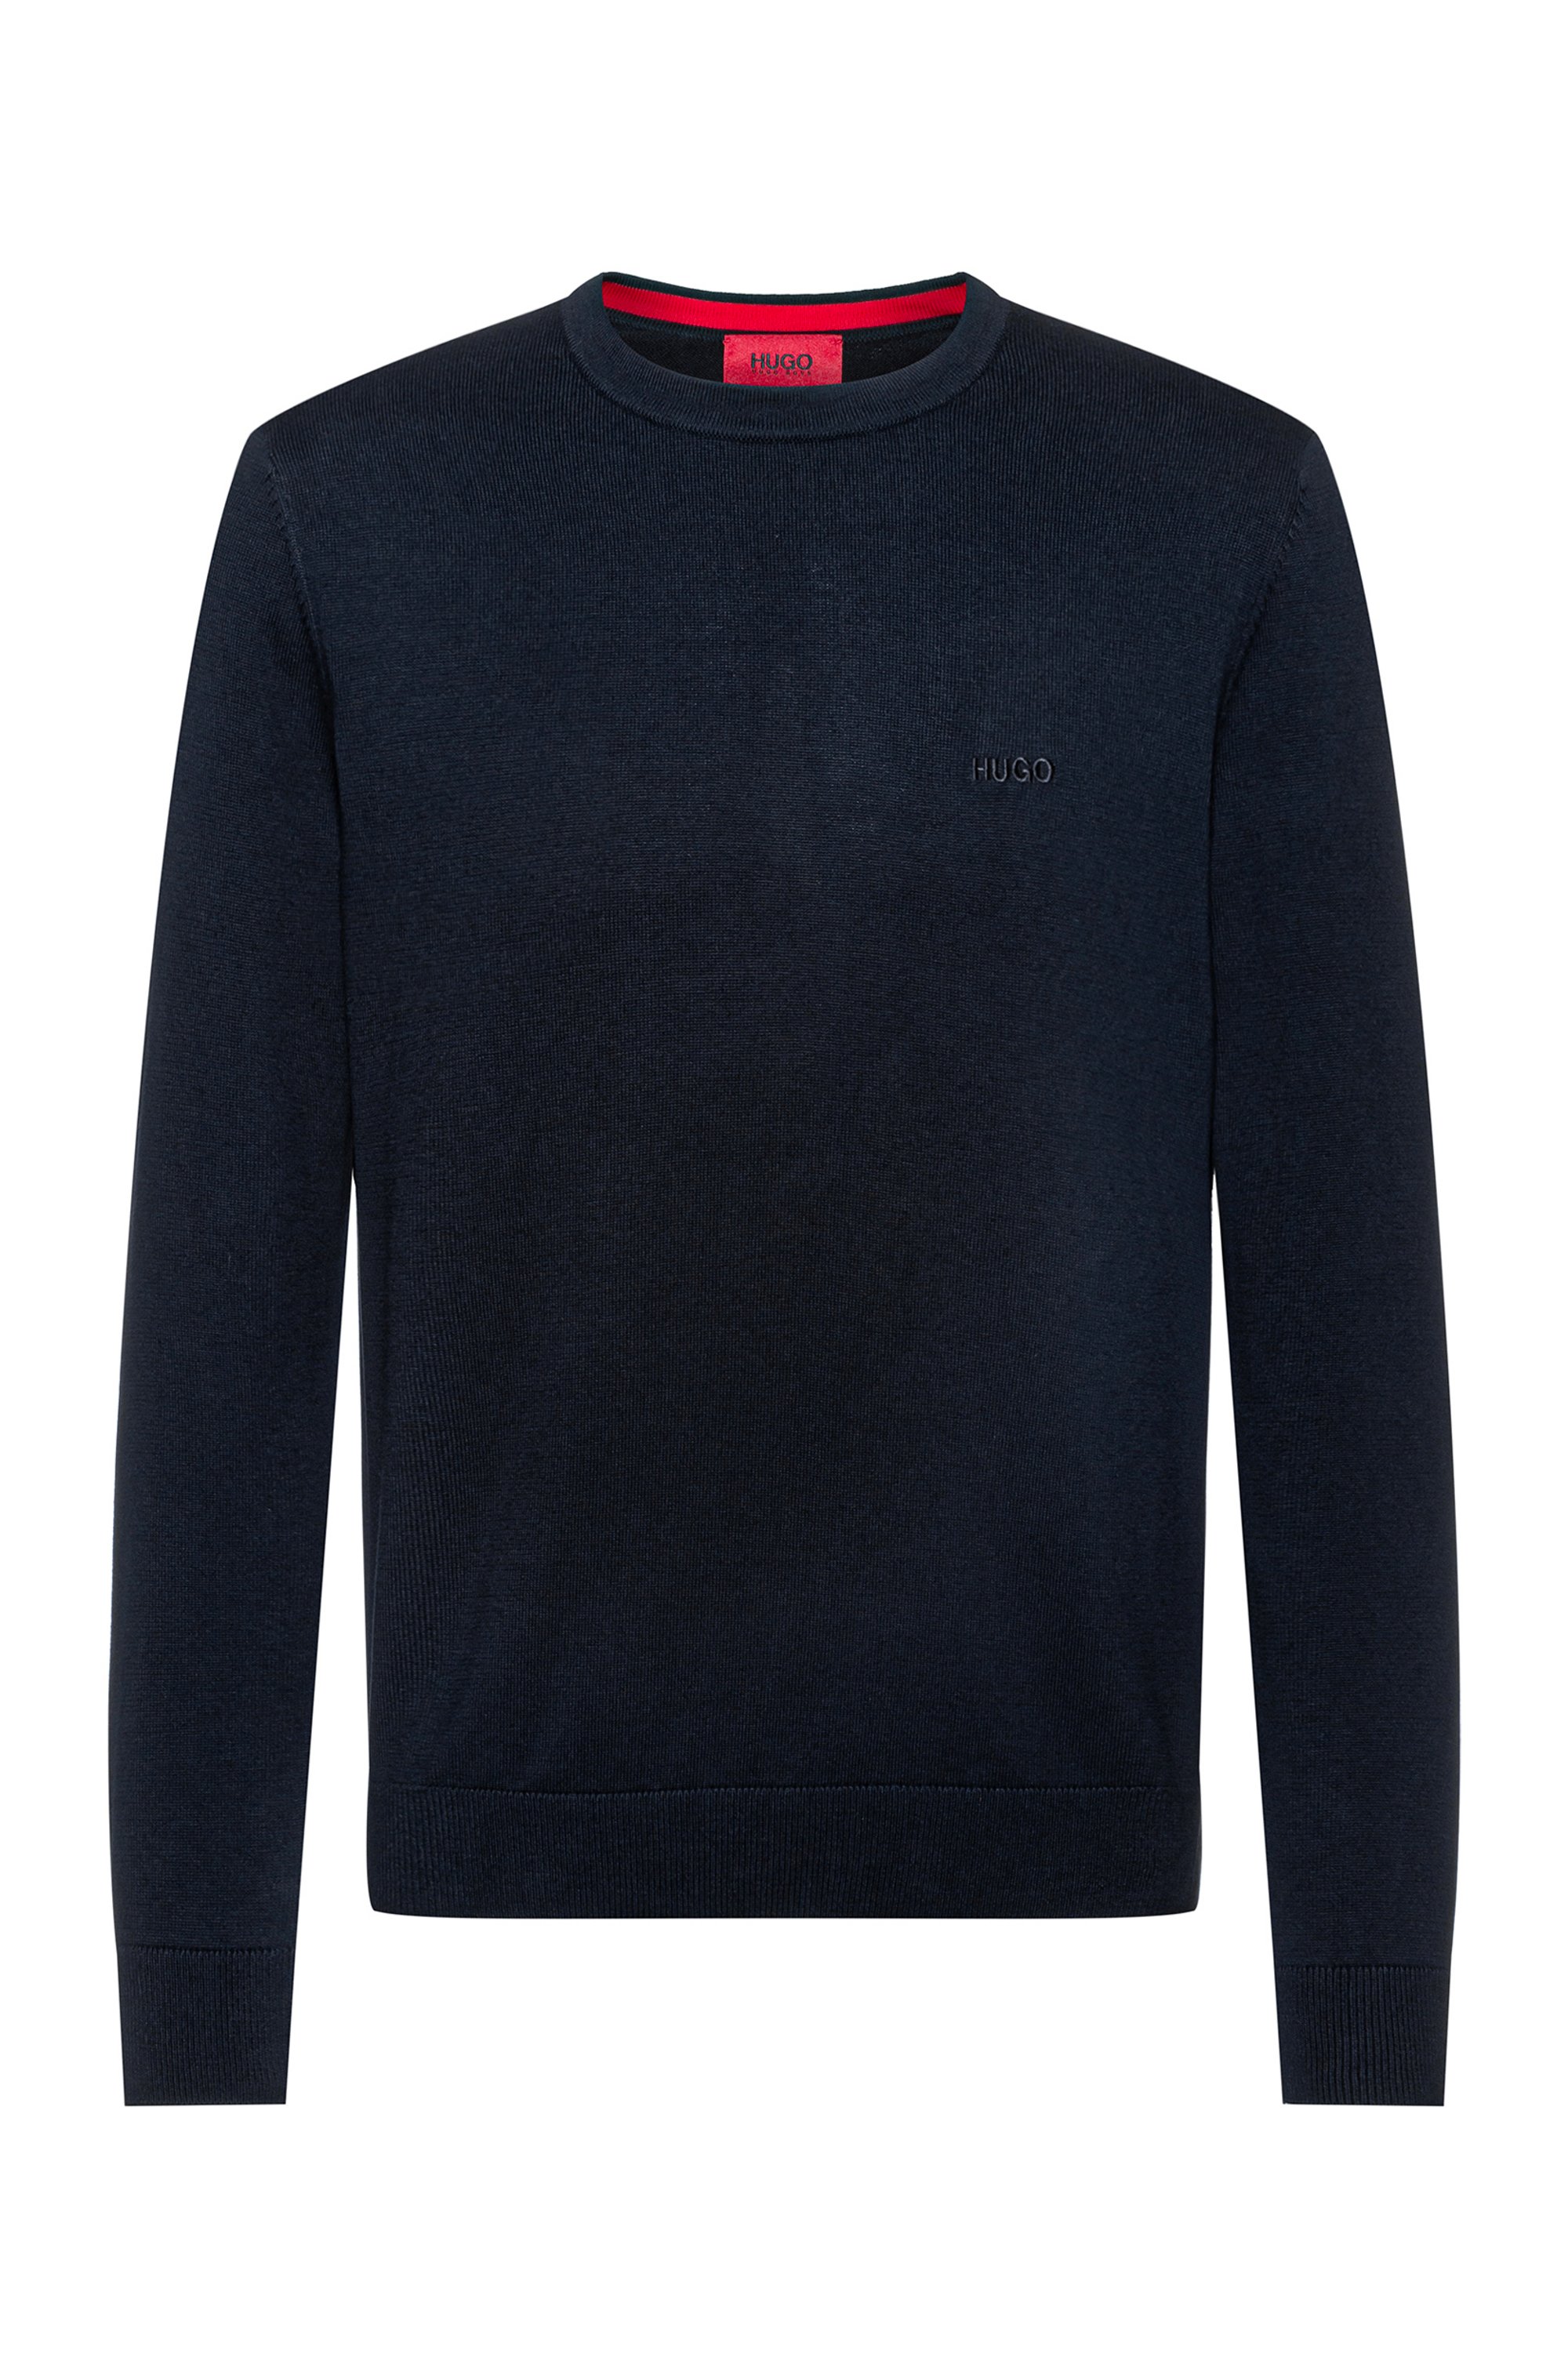 Jersey con cuello redondo de algodón puro con logo en tono a juego, Azul oscuro